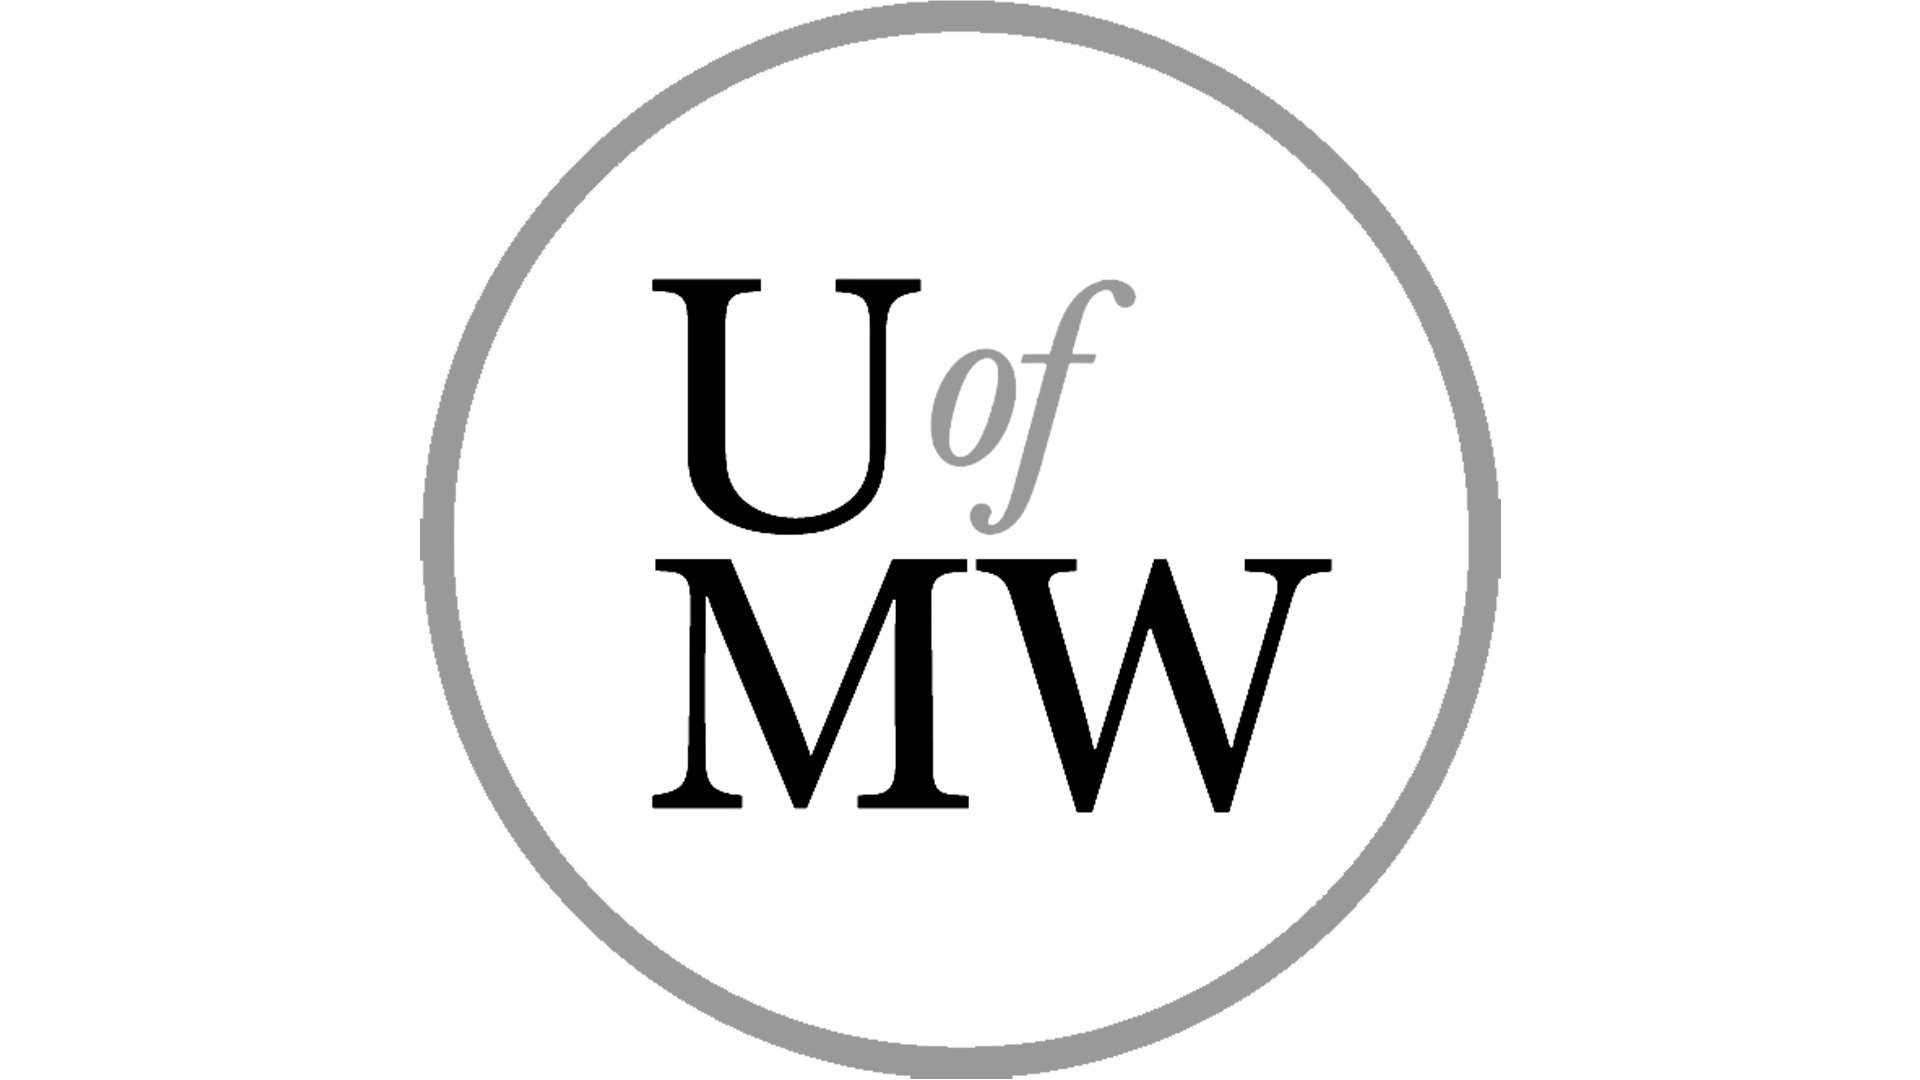 University of Mary Washington logo